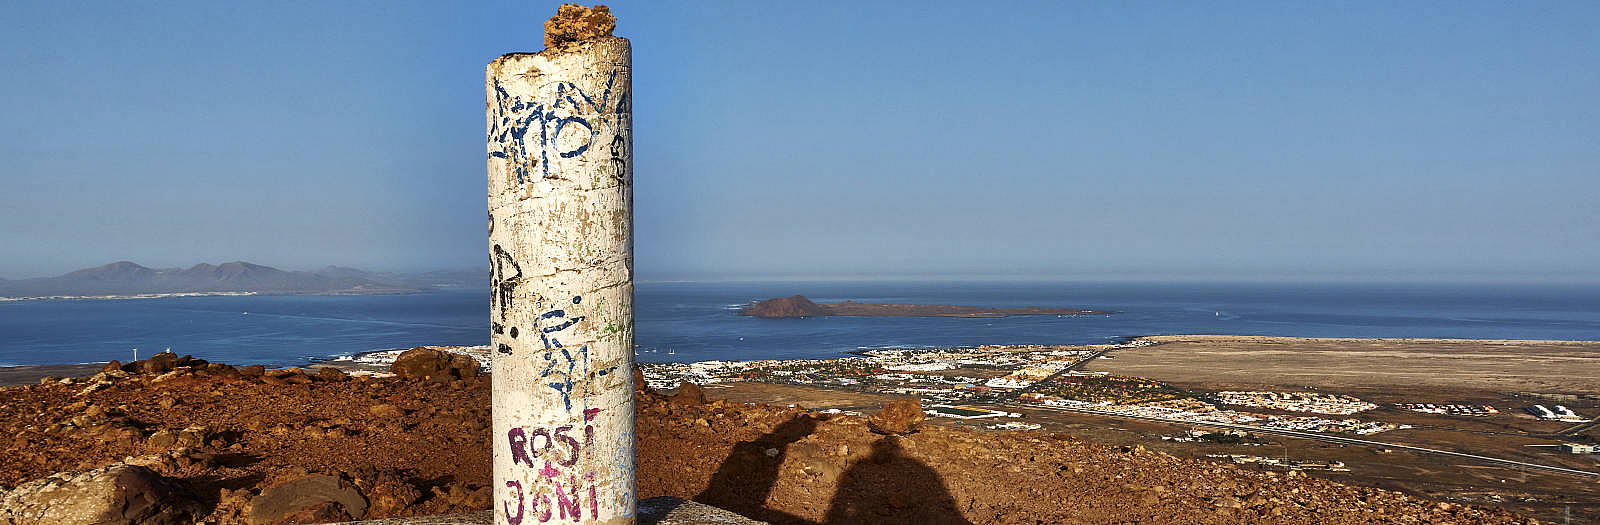 Am Buyuyo (272 m) – das Vértice Geodésico, links Lanzarote, rechts die Isla de Lobos.